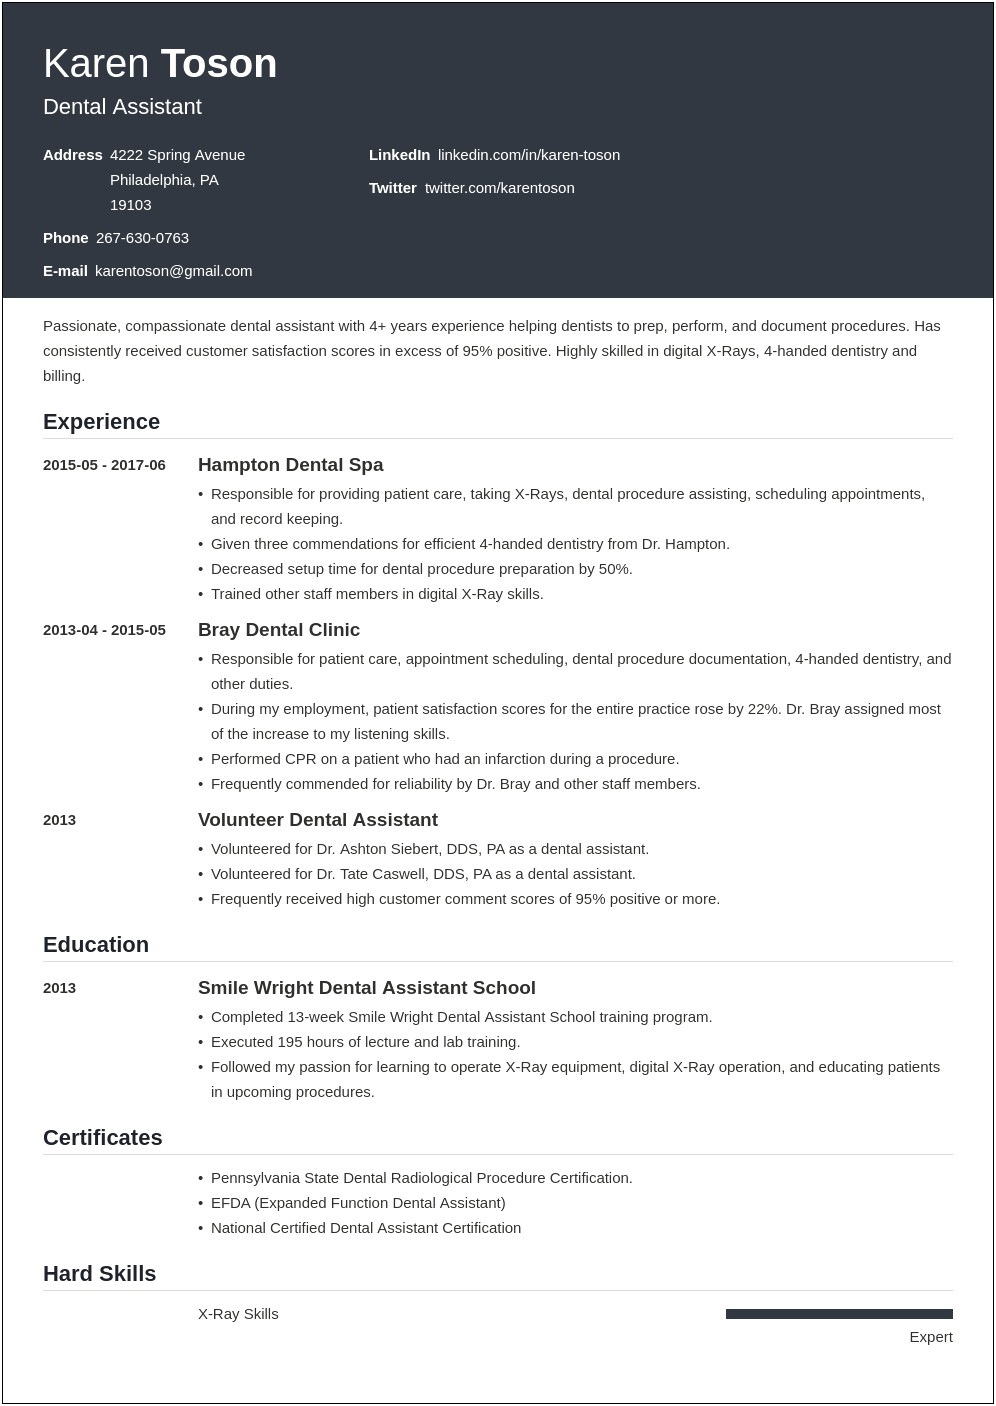 Resume Profile Sample For Dental Assistant